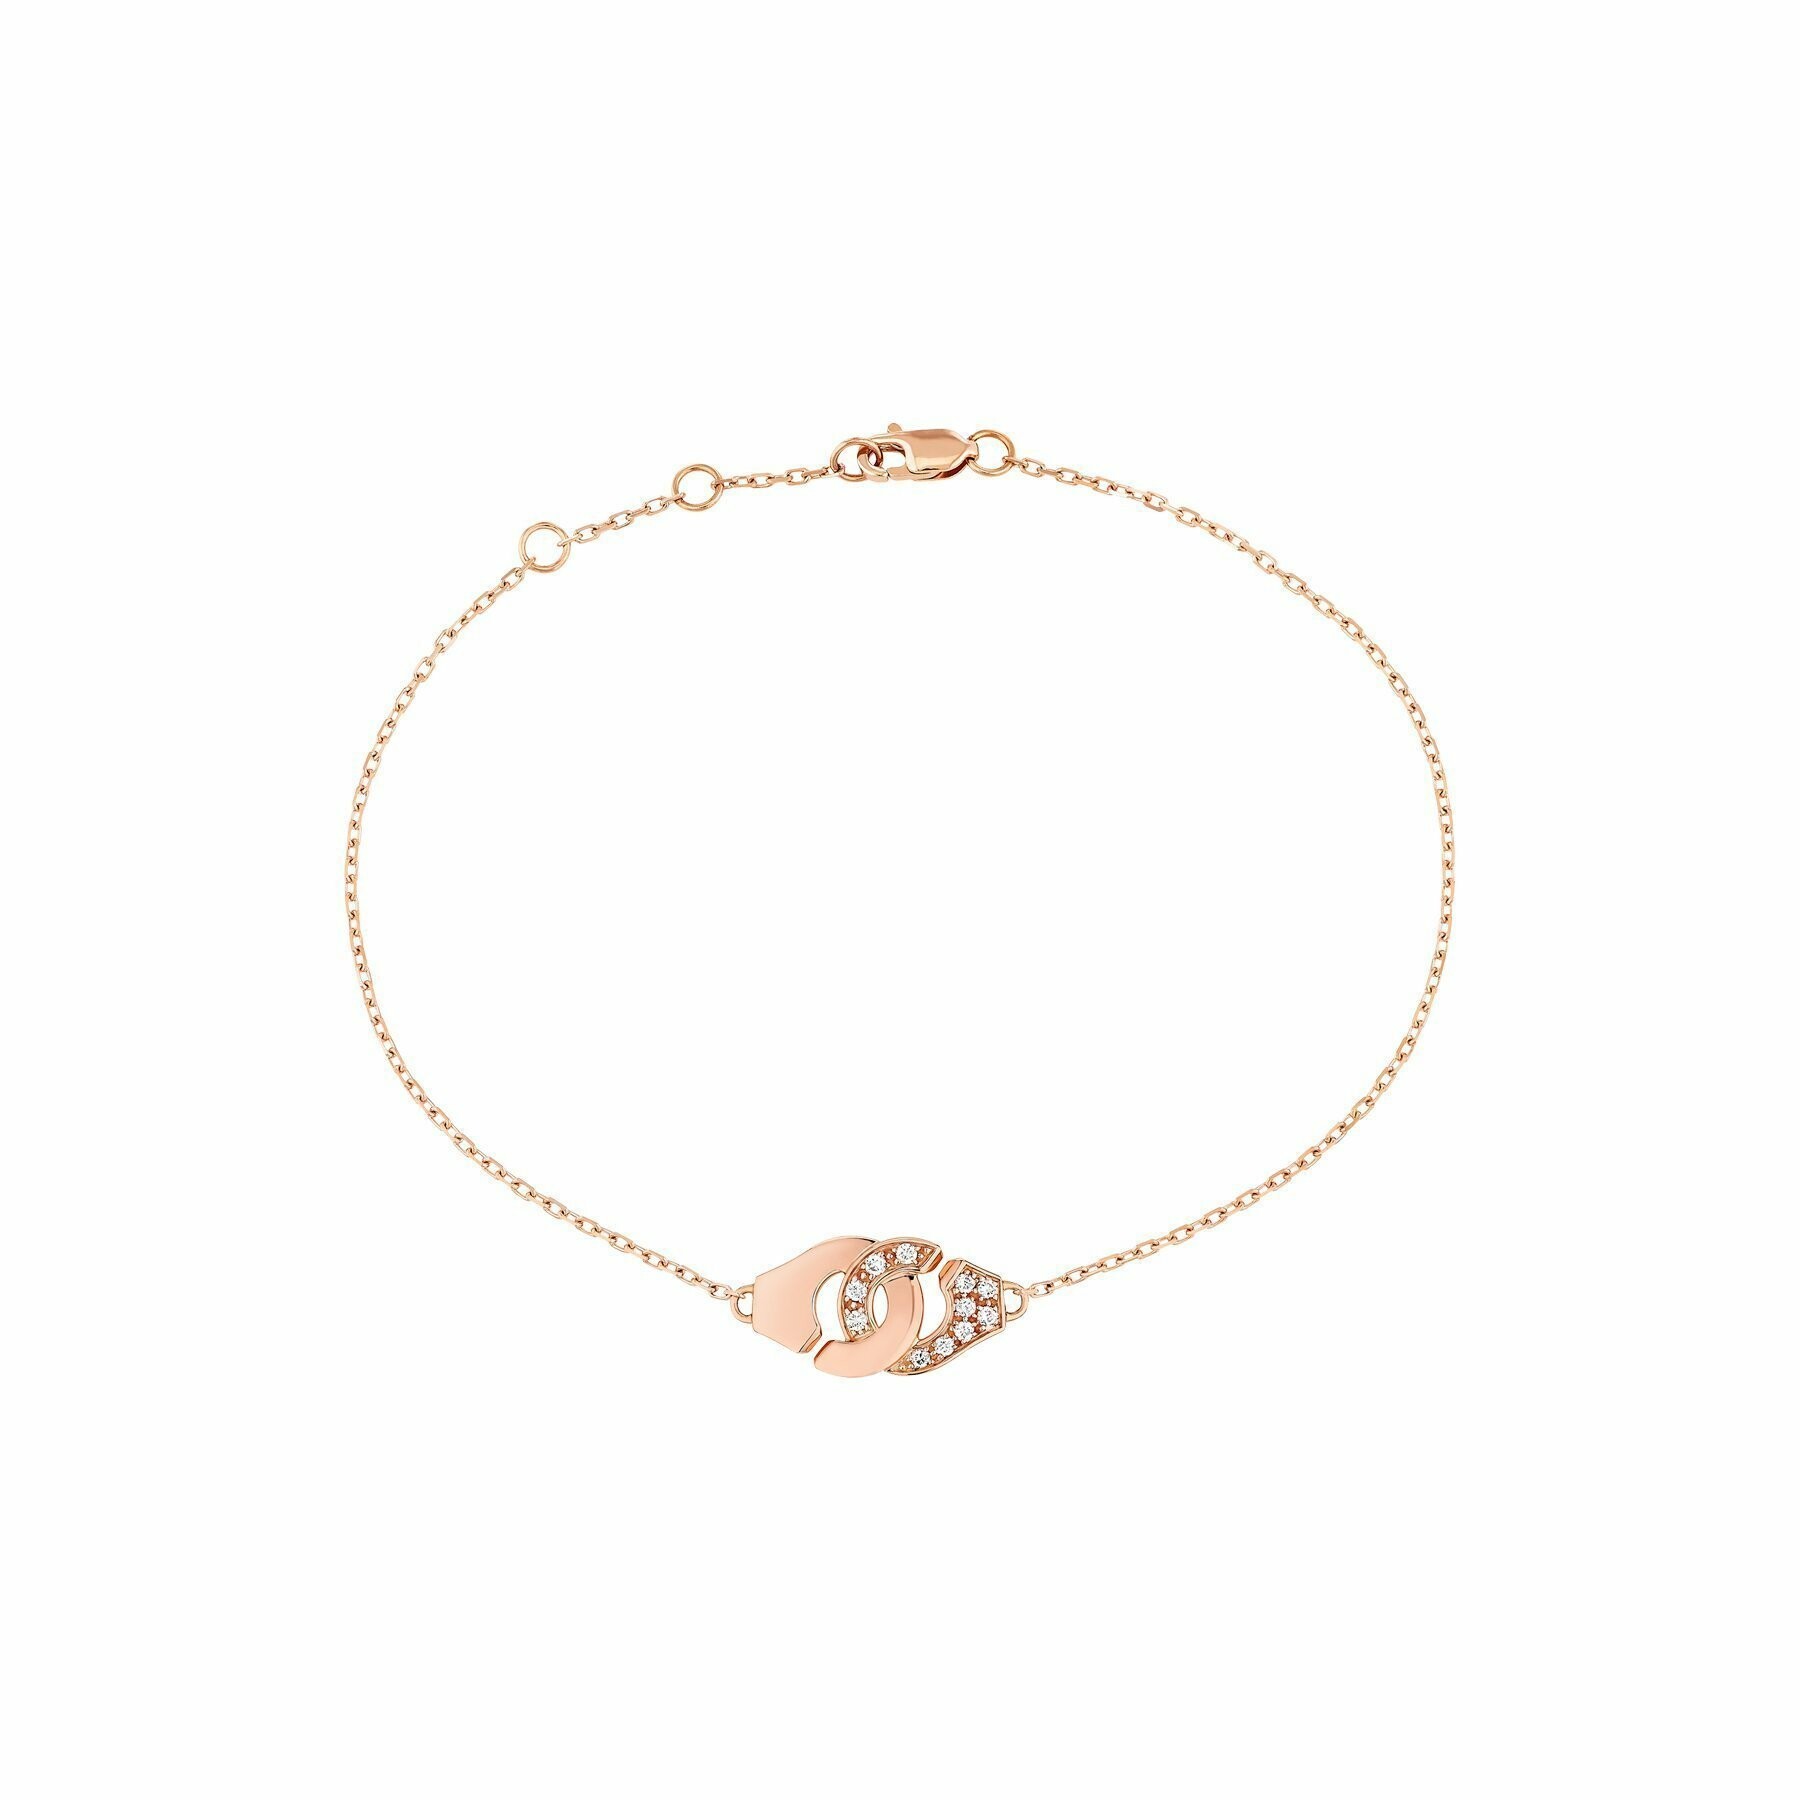 Bracelet Menottes dinh van chaîne forçat R8 en or rose et diamants vue 1